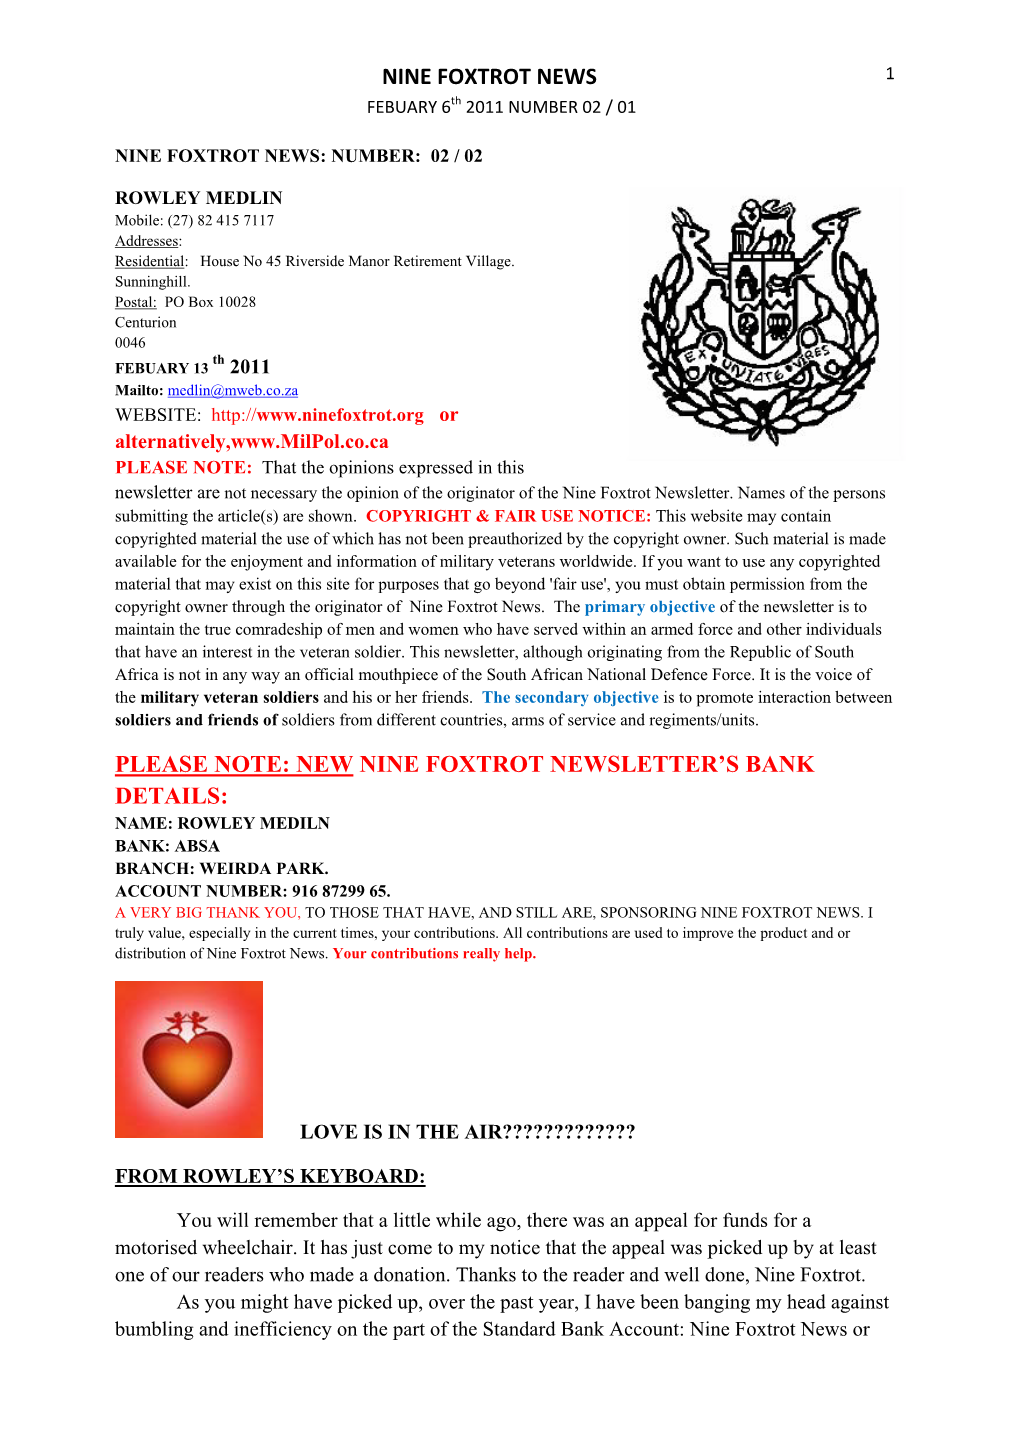 Sergeant's Major/Warrant Officer's Newsletter